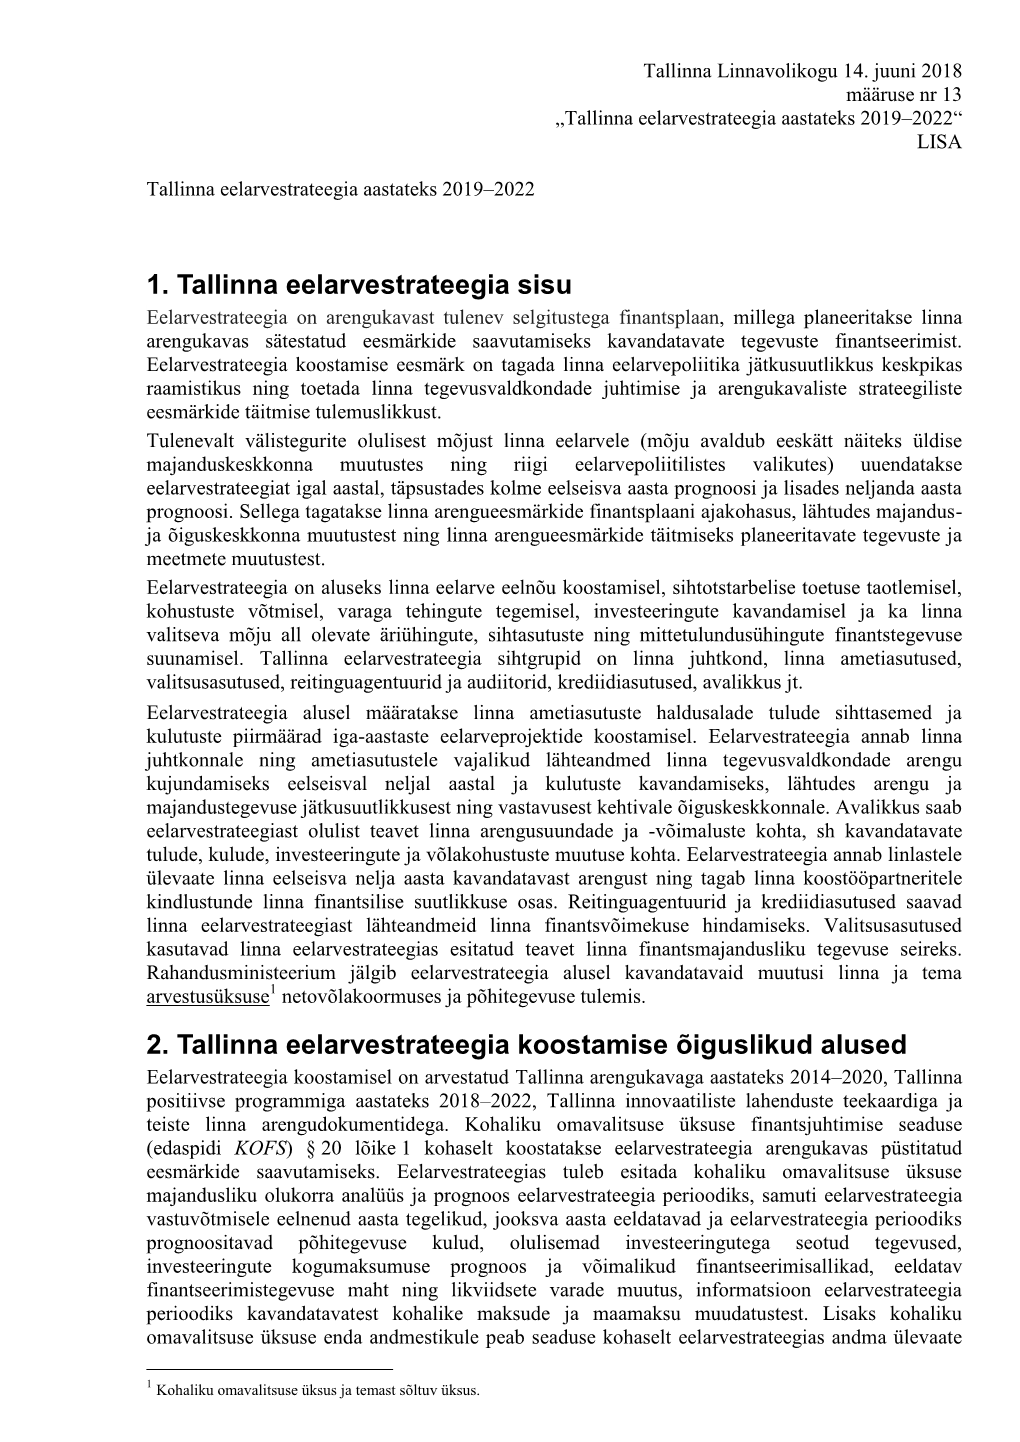 1. Tallinna Eelarvestrateegia Sisu 2. Tallinna Eelarvestrateegia